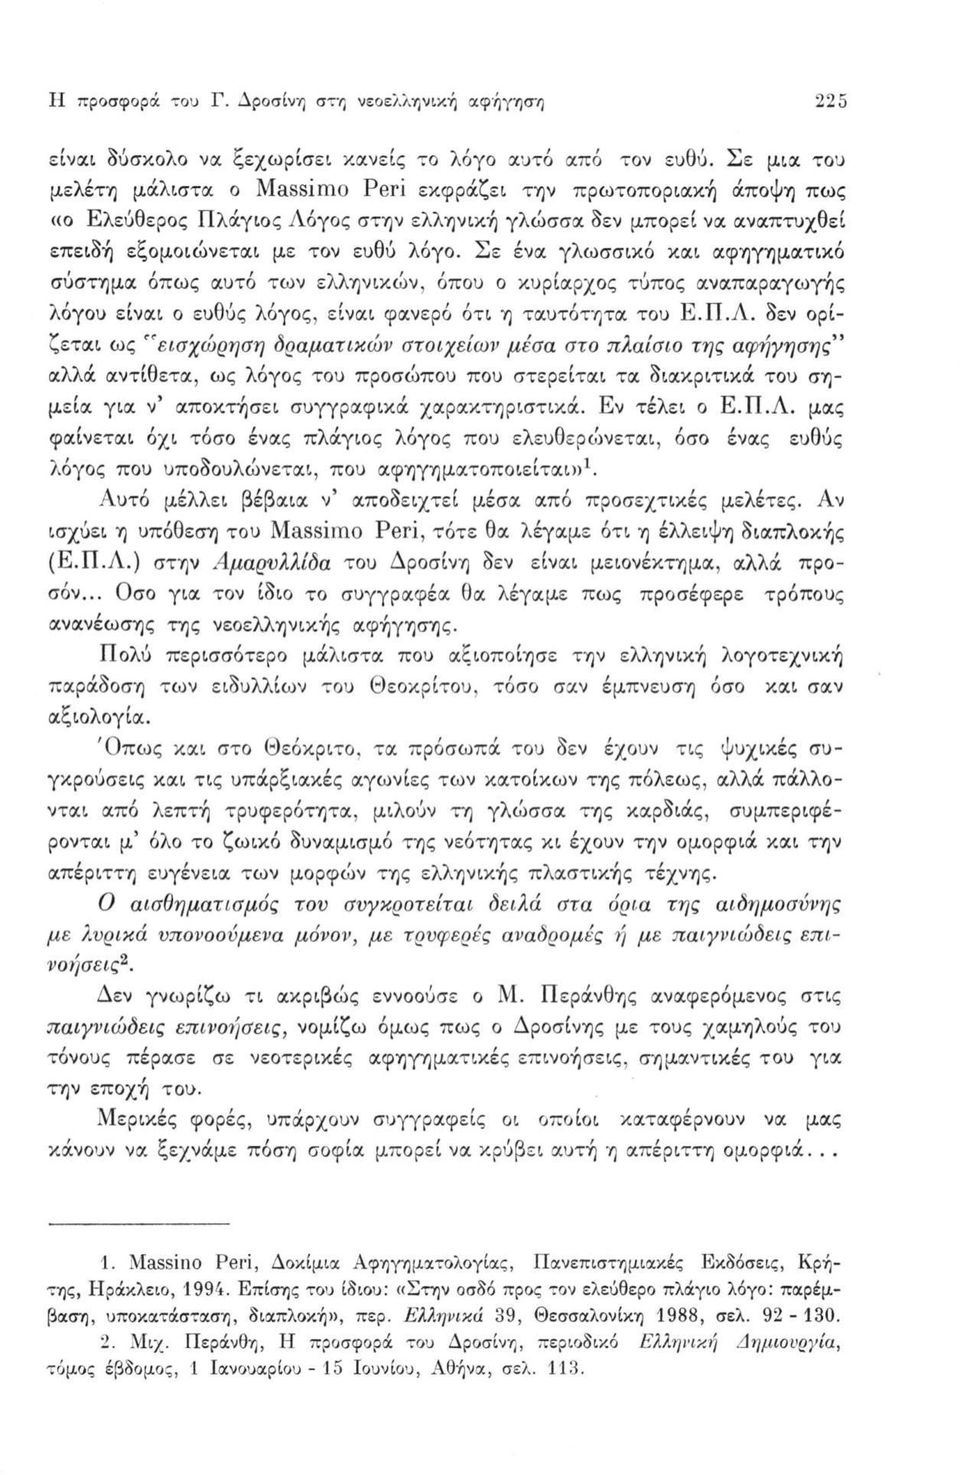 Σε ένα γλωσσικό και αφηγηματικό σύστημα όπως αυτό των ελληνικών, όπου ο κυρίαρχος τύπος αναπαραγωγής λόγου είναι ο ευθύς λόγος, είναι φανερό ότι η ταυτότητα του Ε.Π.Λ.